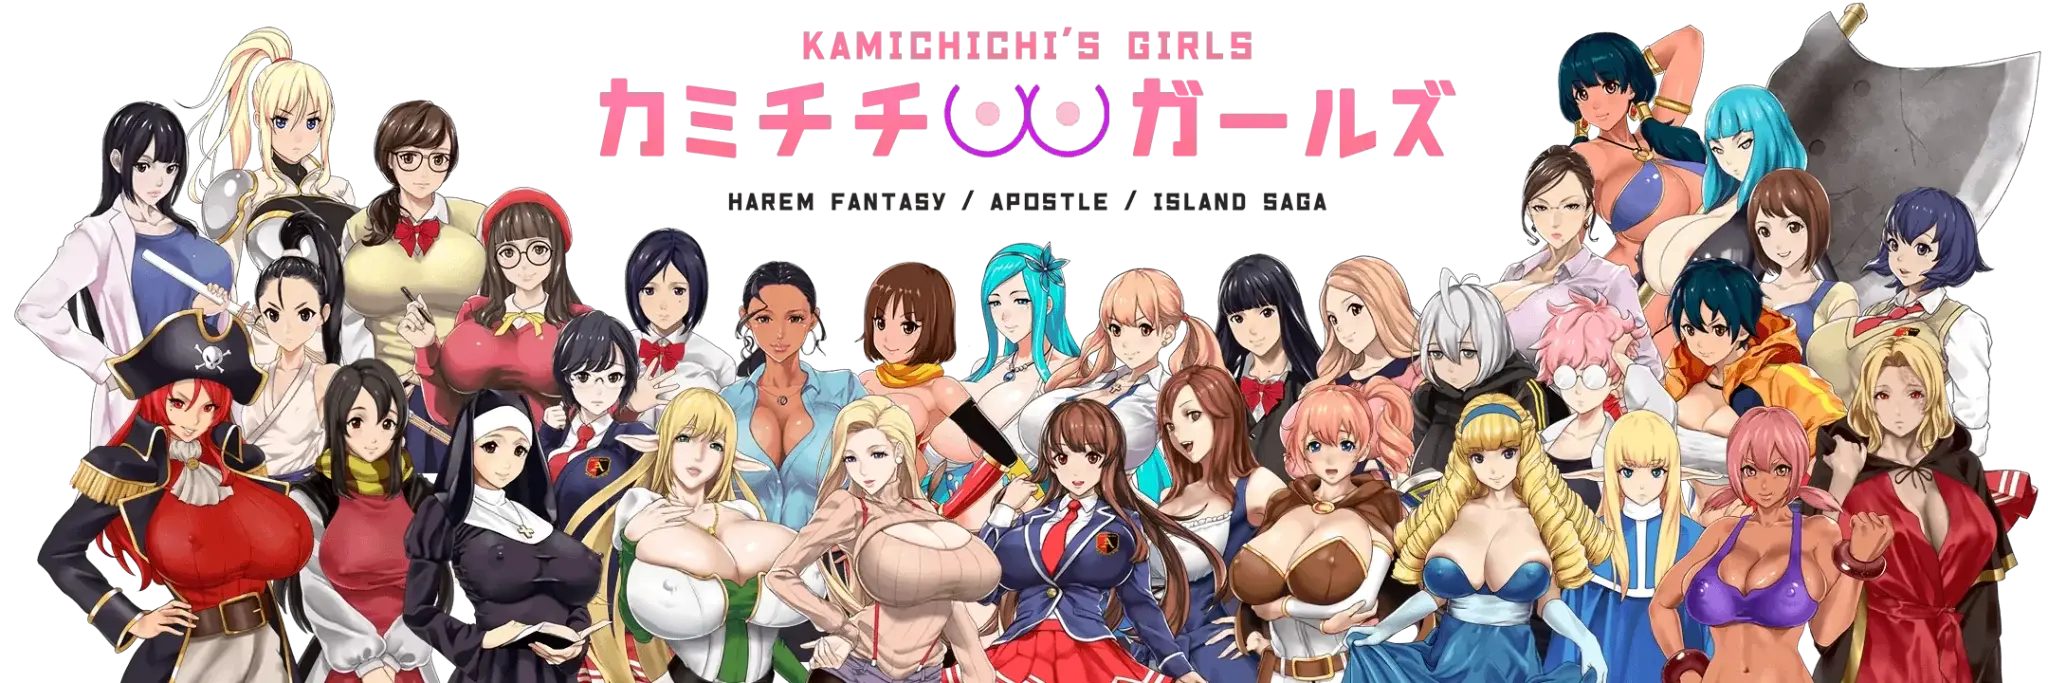 Kamichichi's Girls main image